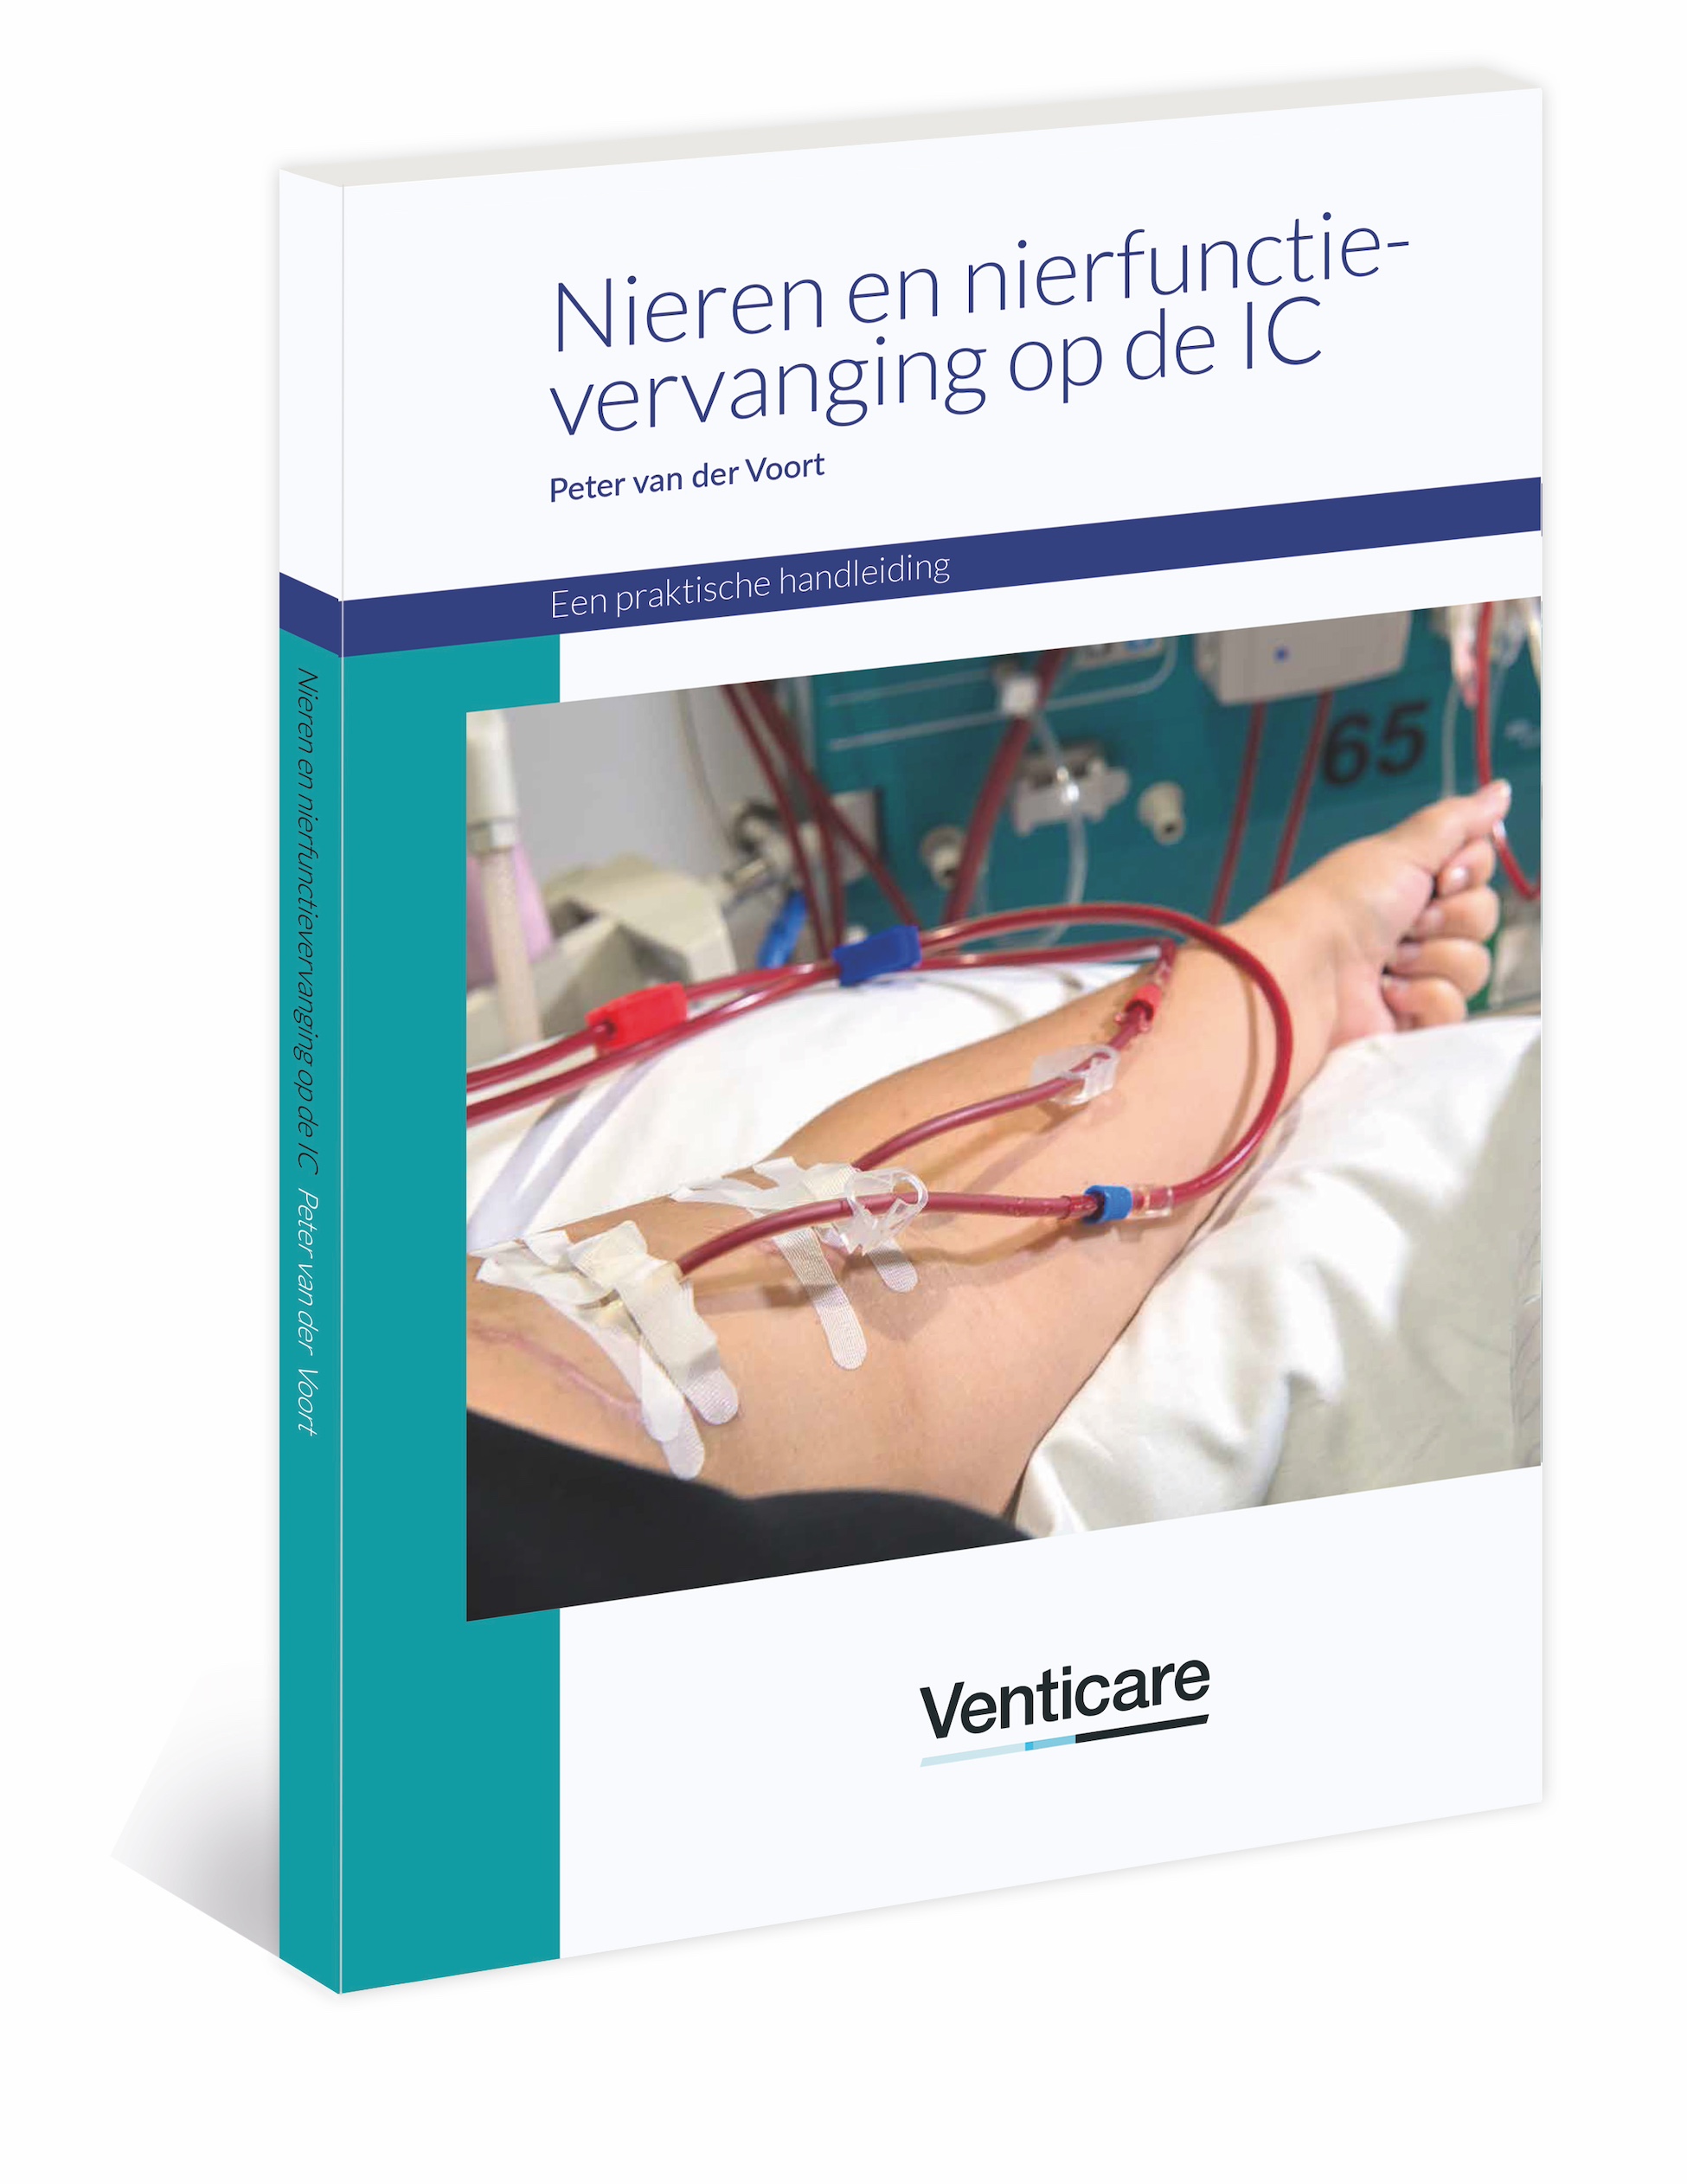 Nieren en nierfunctievervanging op de IC